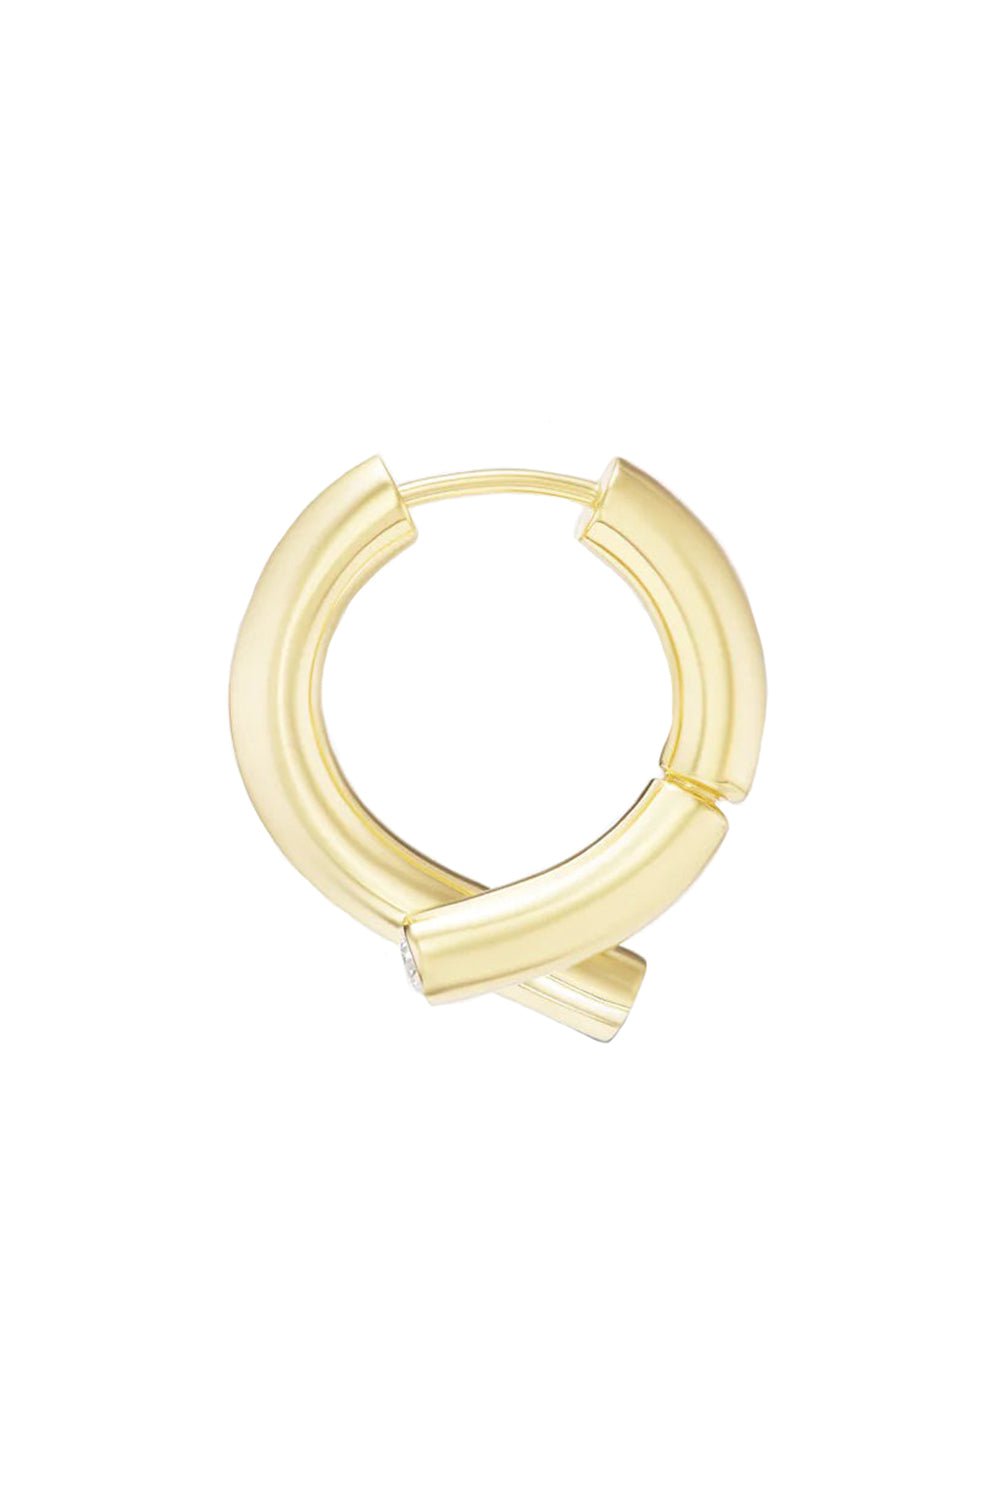 TABAYER-Mini Oera Diamond Earrings-YELLOW GOLD